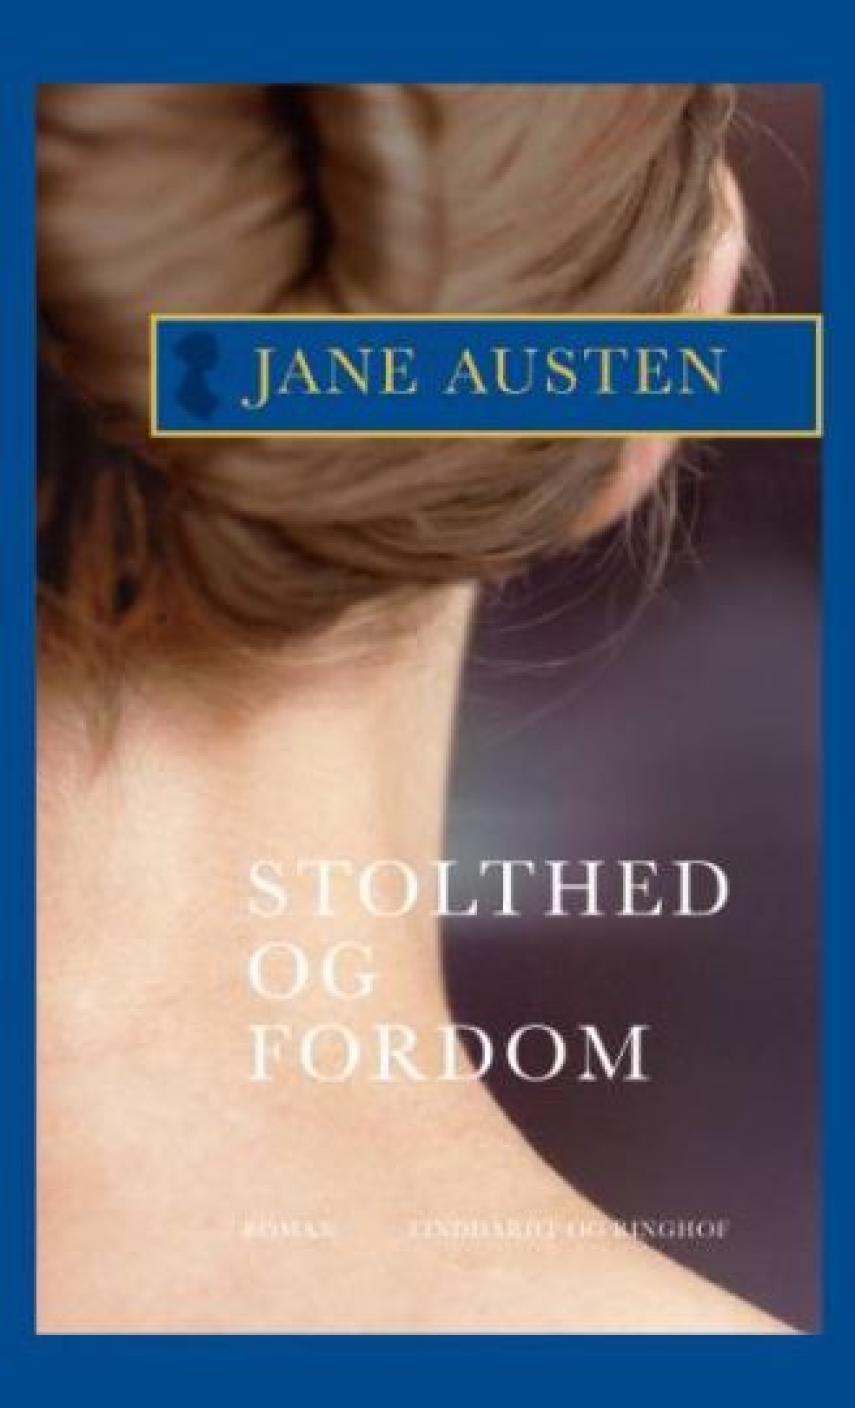 Jane Austen: Stolthed og fordom : roman (Ved Vibeke Houstrup)